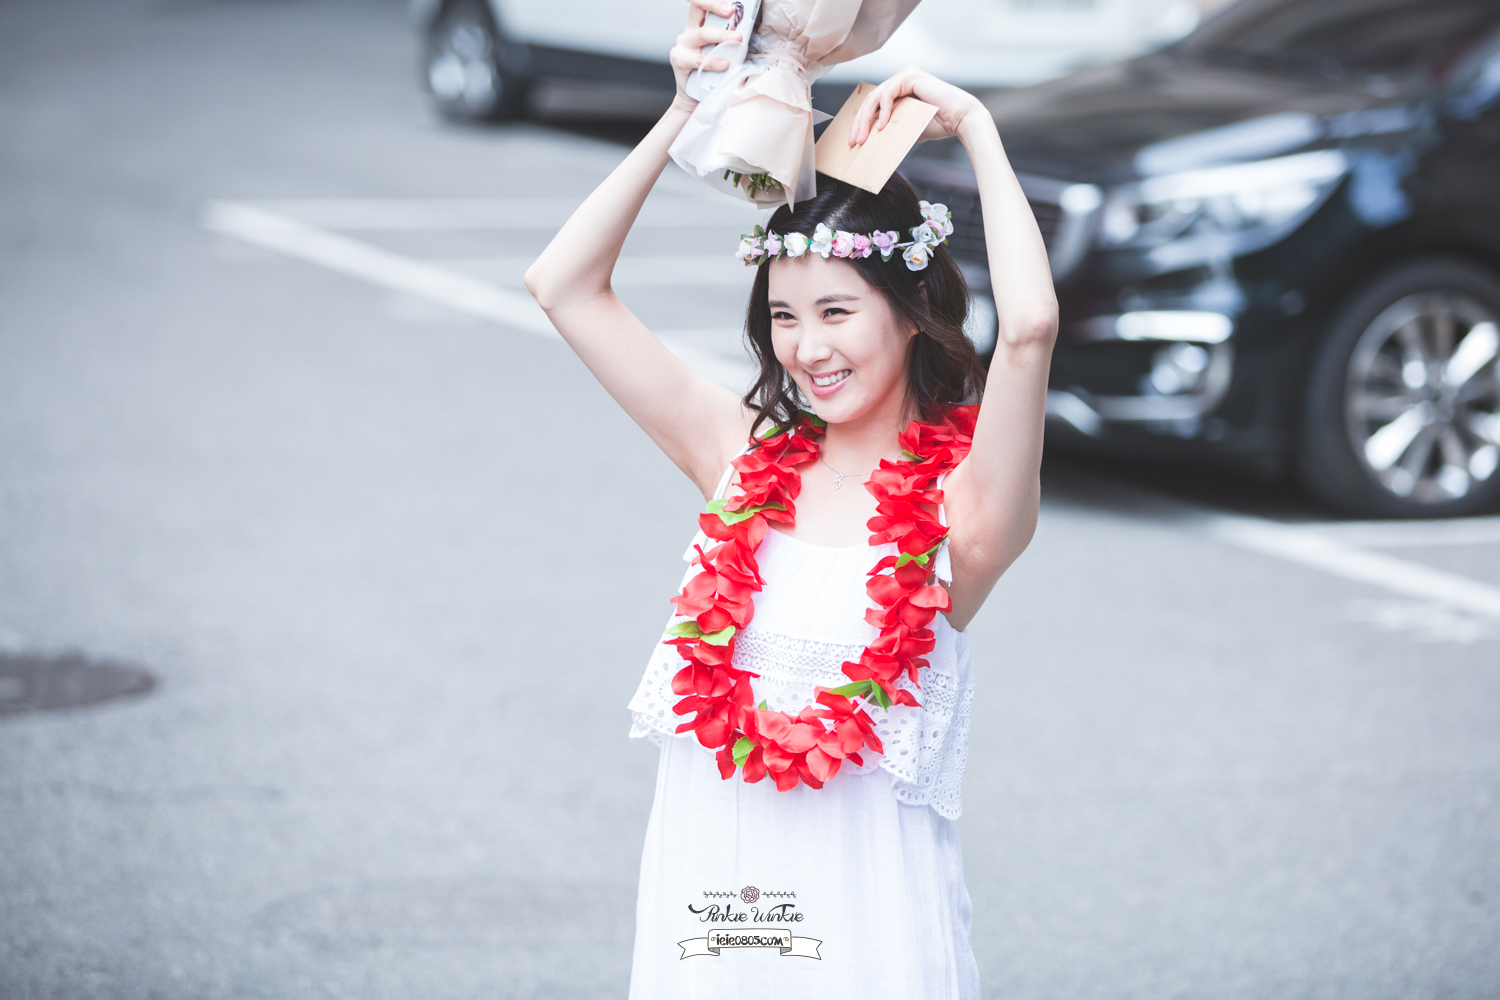 [OTHER][08-12-2015]SeoHyun tham dự vở nhạc kịch mới mang tên "Mamma Mia!" - Page 37 32703519284_538708eda5_o